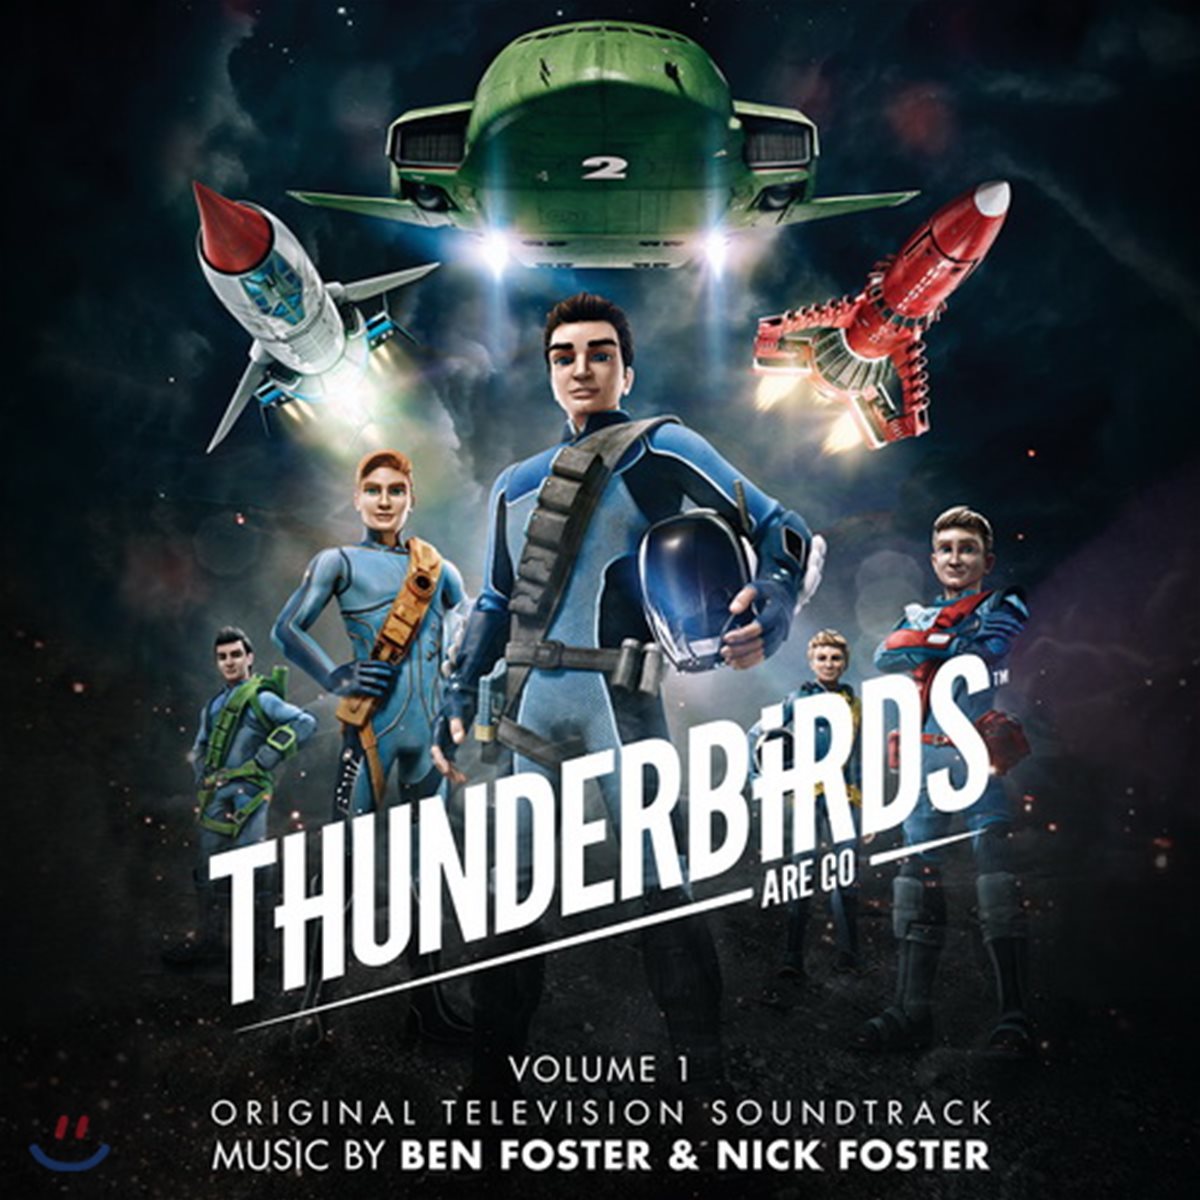 썬더버드 아 고 애니메이션 TV 시리즈 1 음악 (Thunderbirds Are Go Volume 1 Original Television Soundtrack)